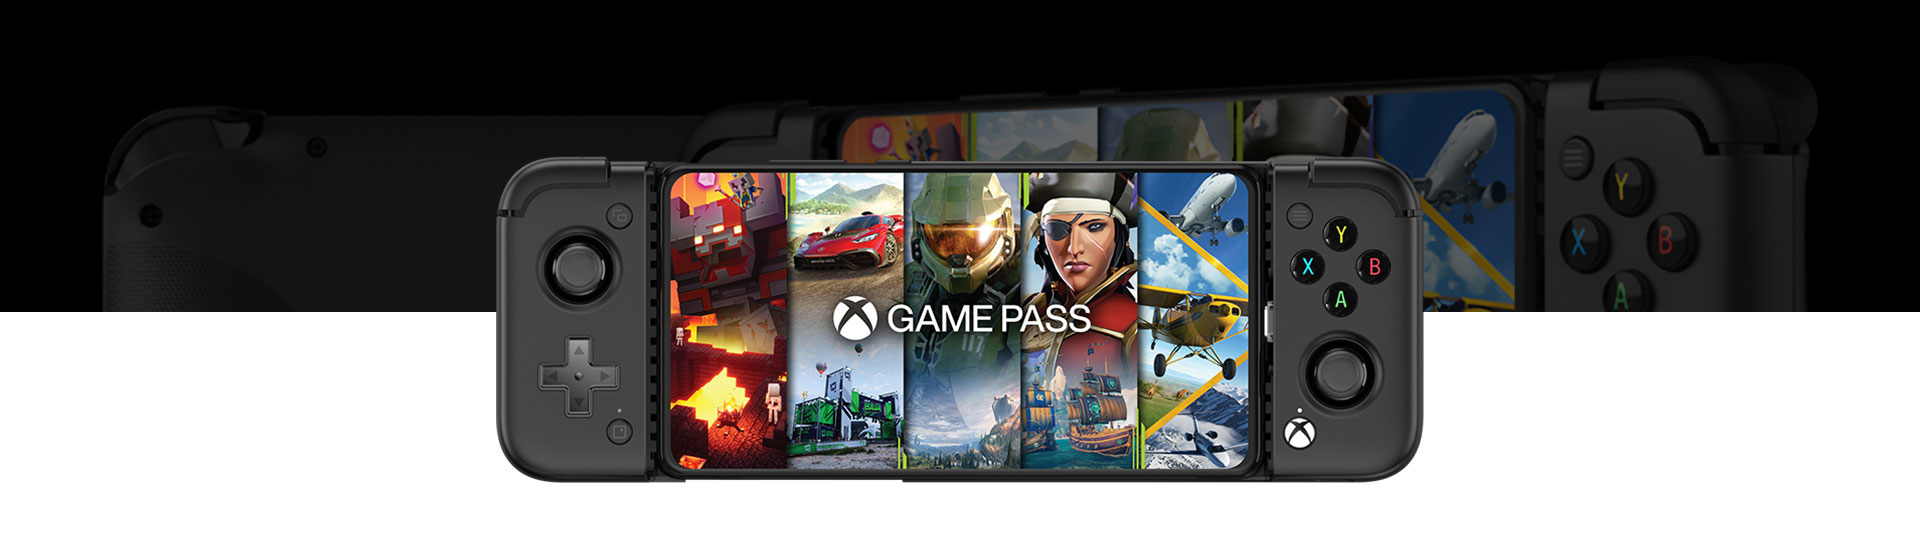 GameSir X2 Pro mobil gamingkontroller med Game Pass-skjermfyll, sett forfra